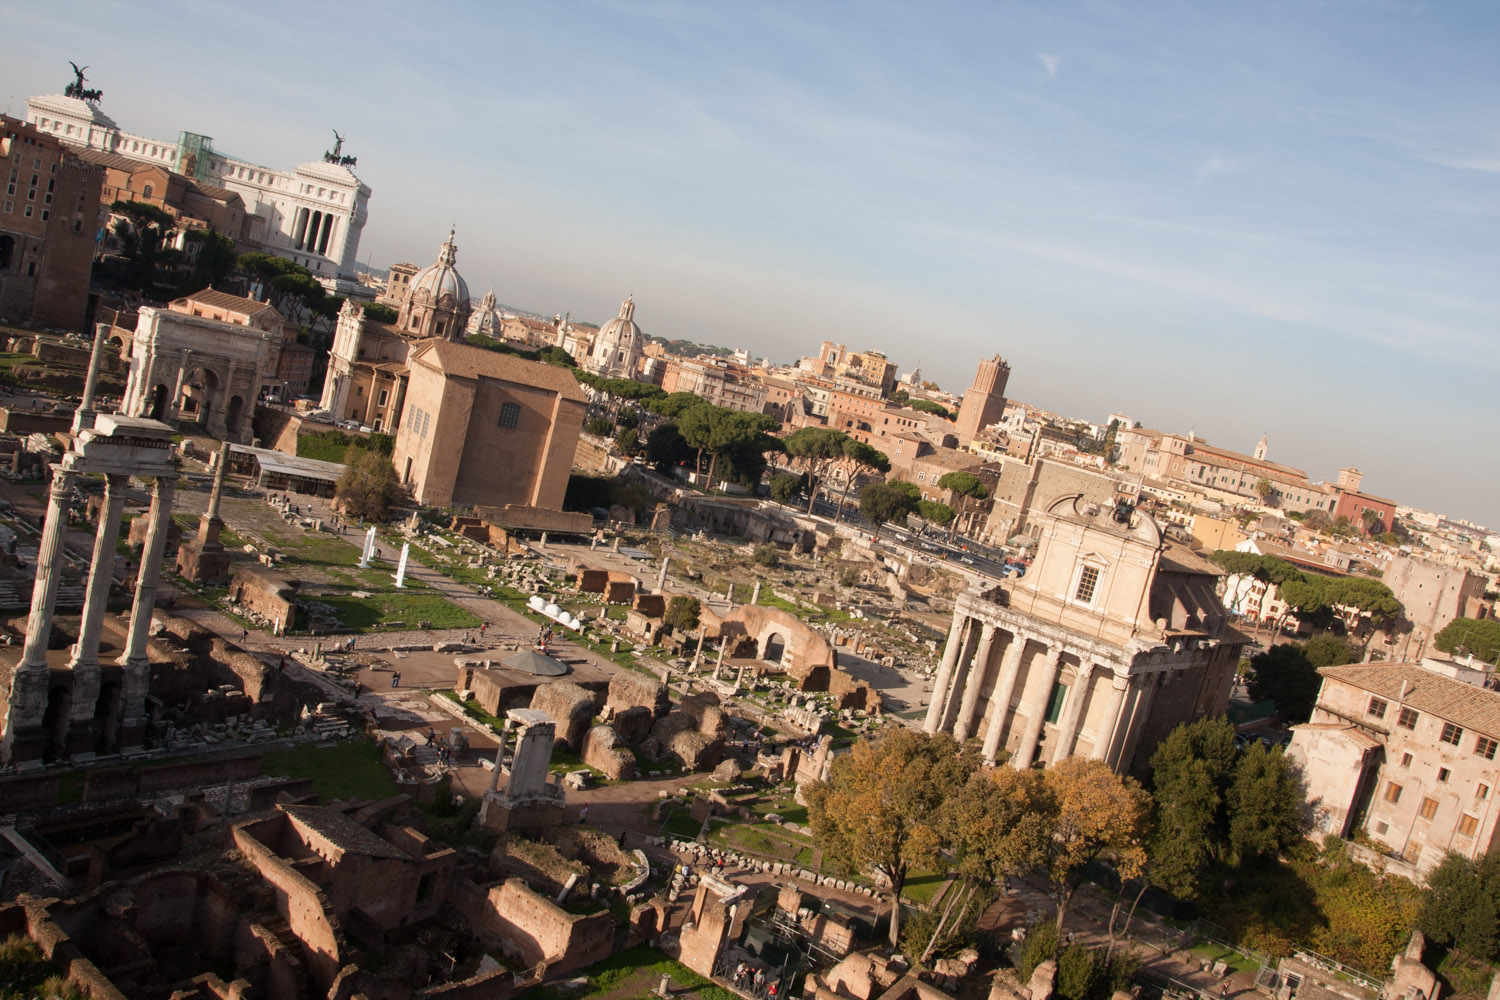 Vista general del foro romano, Roma, Italia